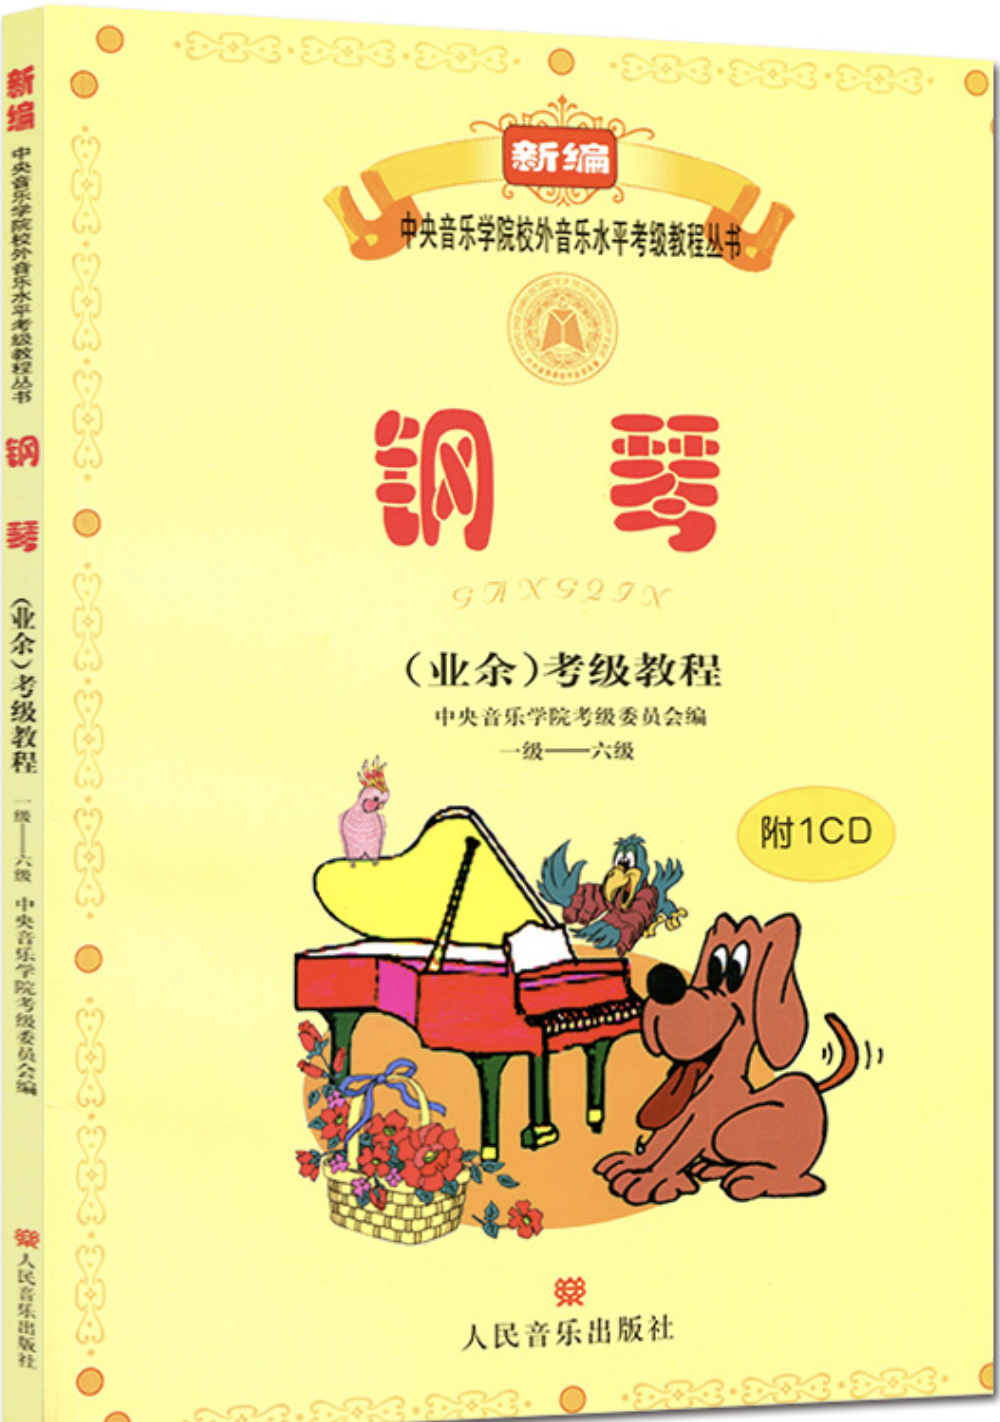 6级 中小型乐曲 蝴蝶-钢琴谱